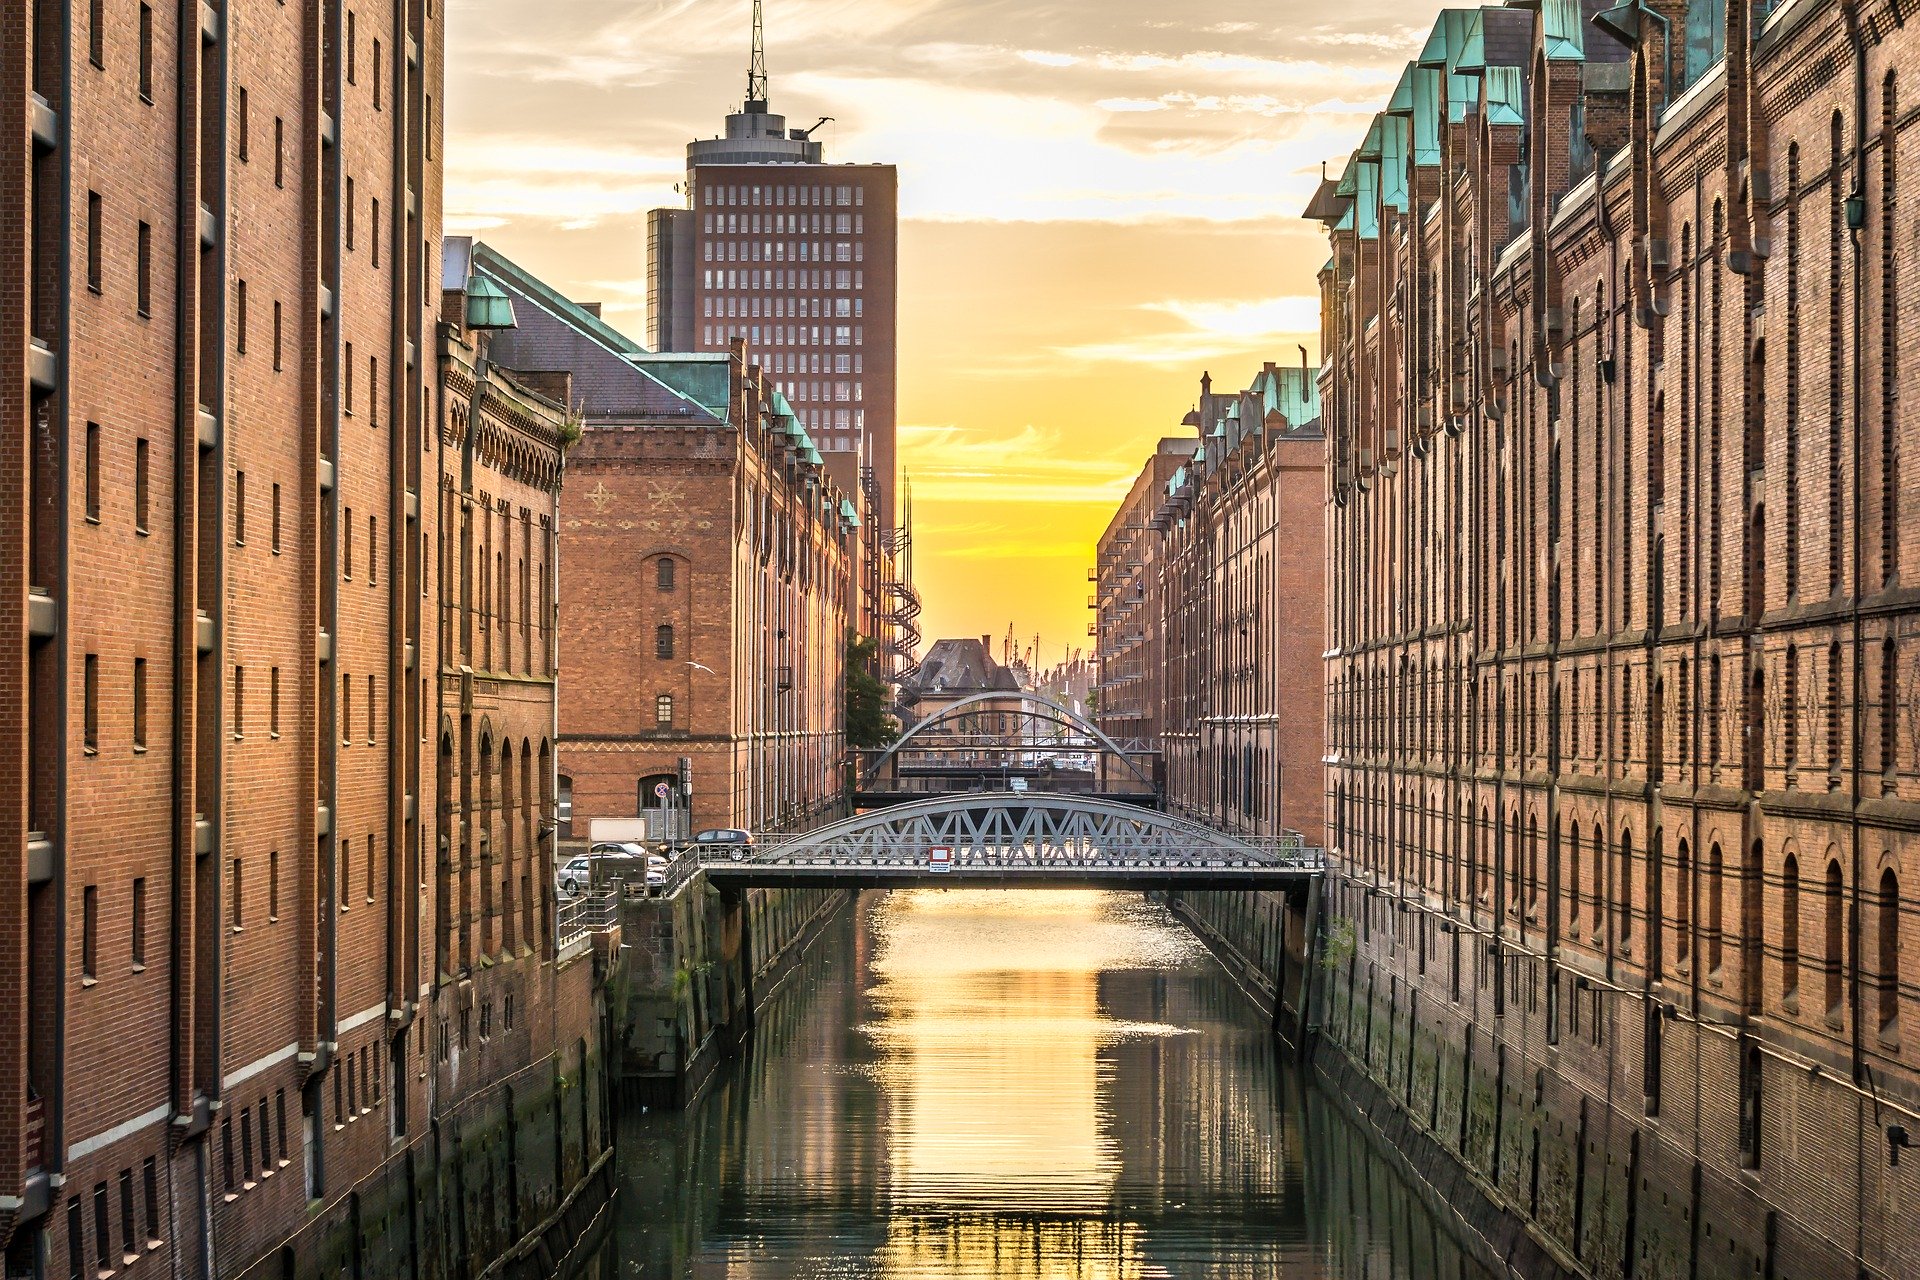 Blick auf die Hamburger Altstadt von einem Fluss aus